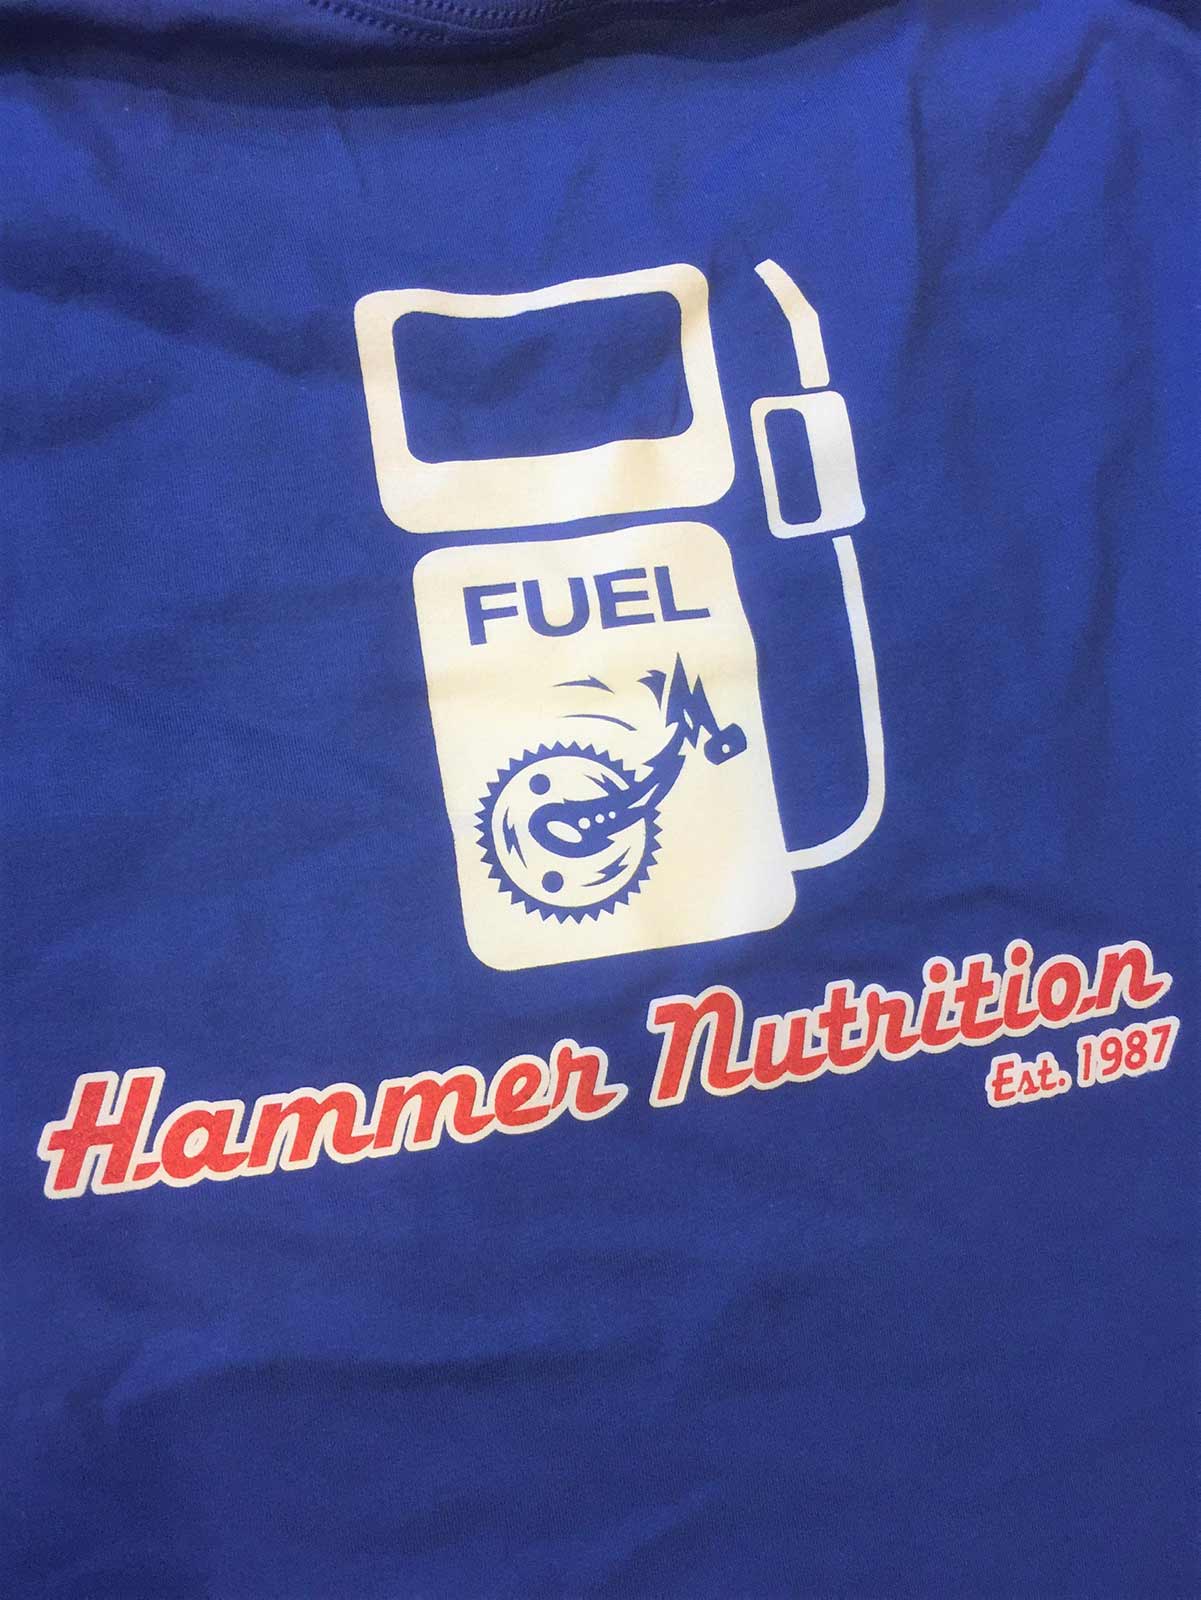 Hammer fuel custom designed shirt